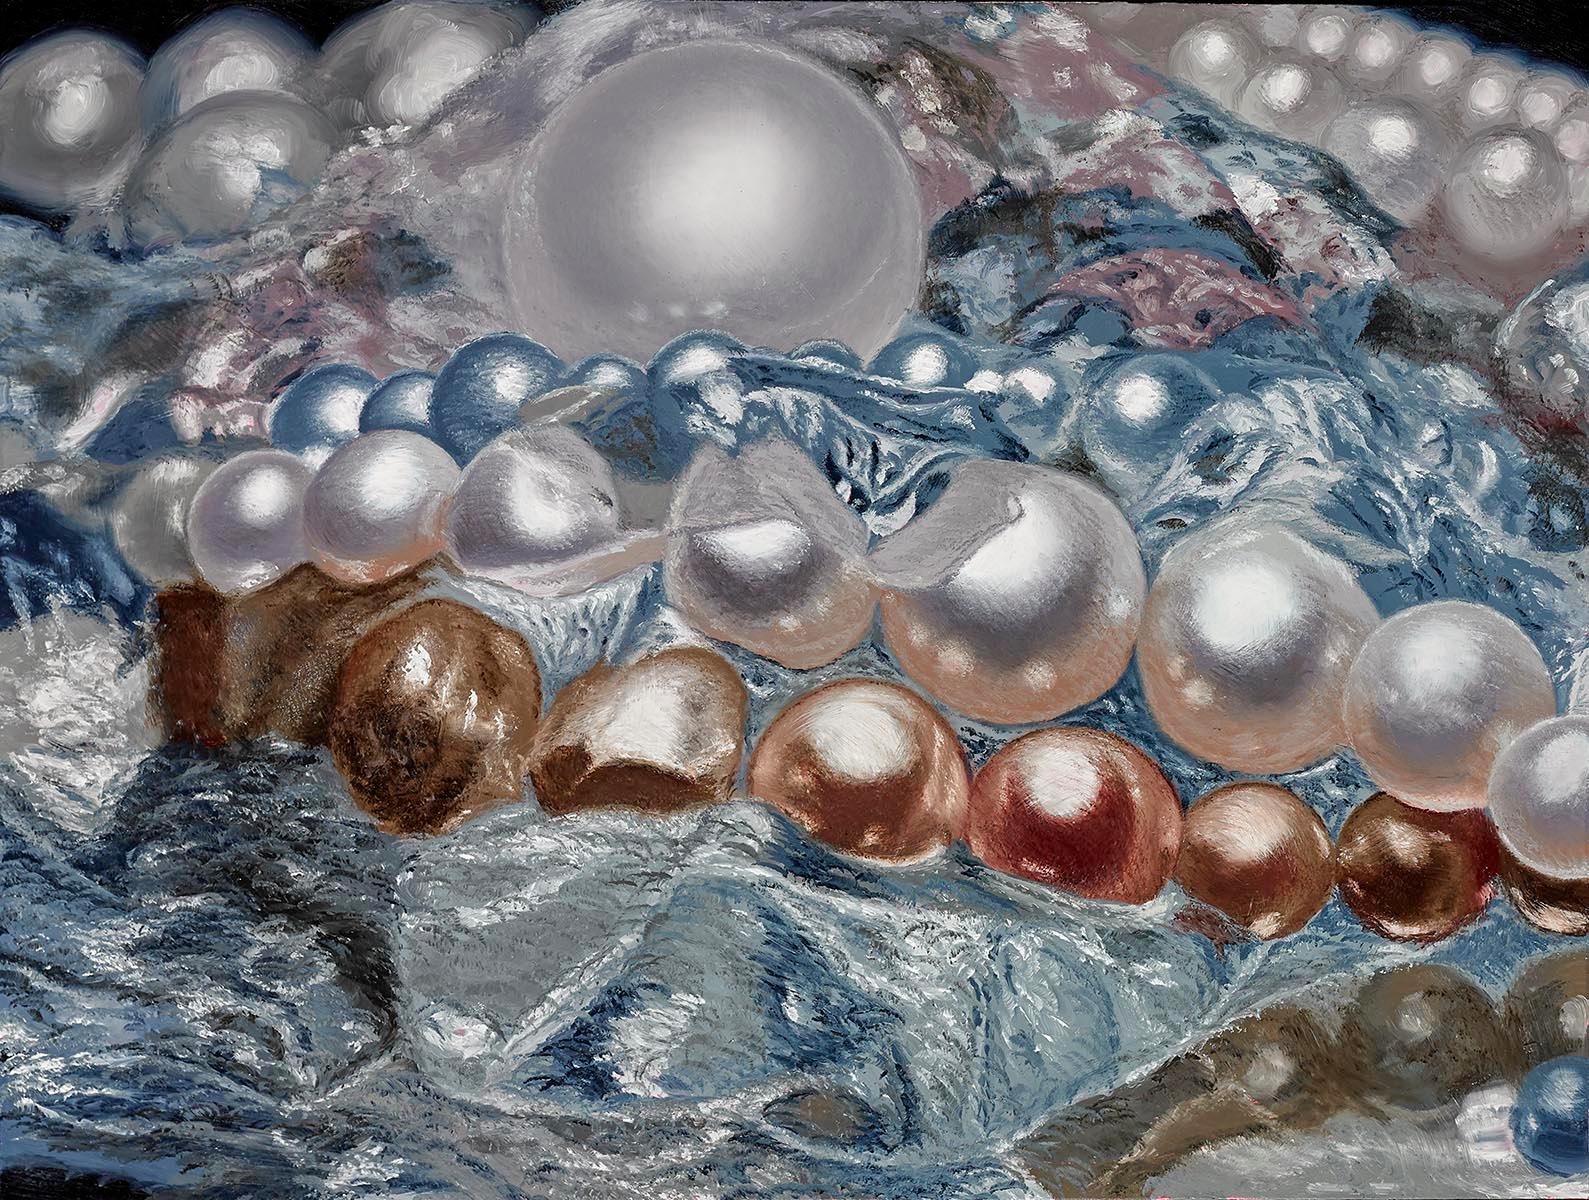 Mirror Pearls - Painting by Ben Weiner